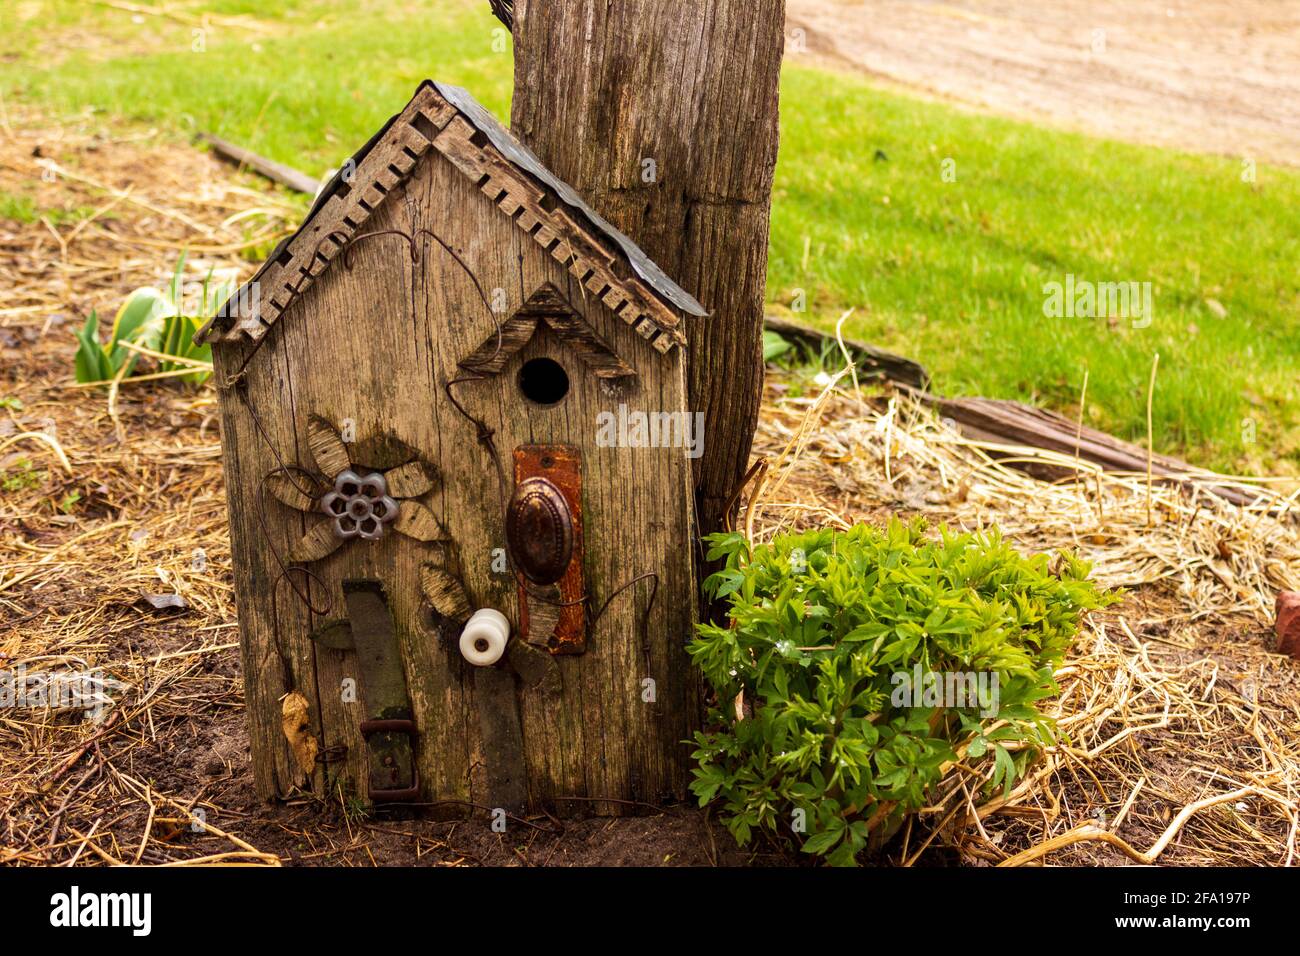 Un birdhouse rustique fait d'une poignée de porte réutilisée, poignée de robinet d'eau, ceinture, isolant, étain et vieux bois décoratif penche contre un poteau. Banque D'Images